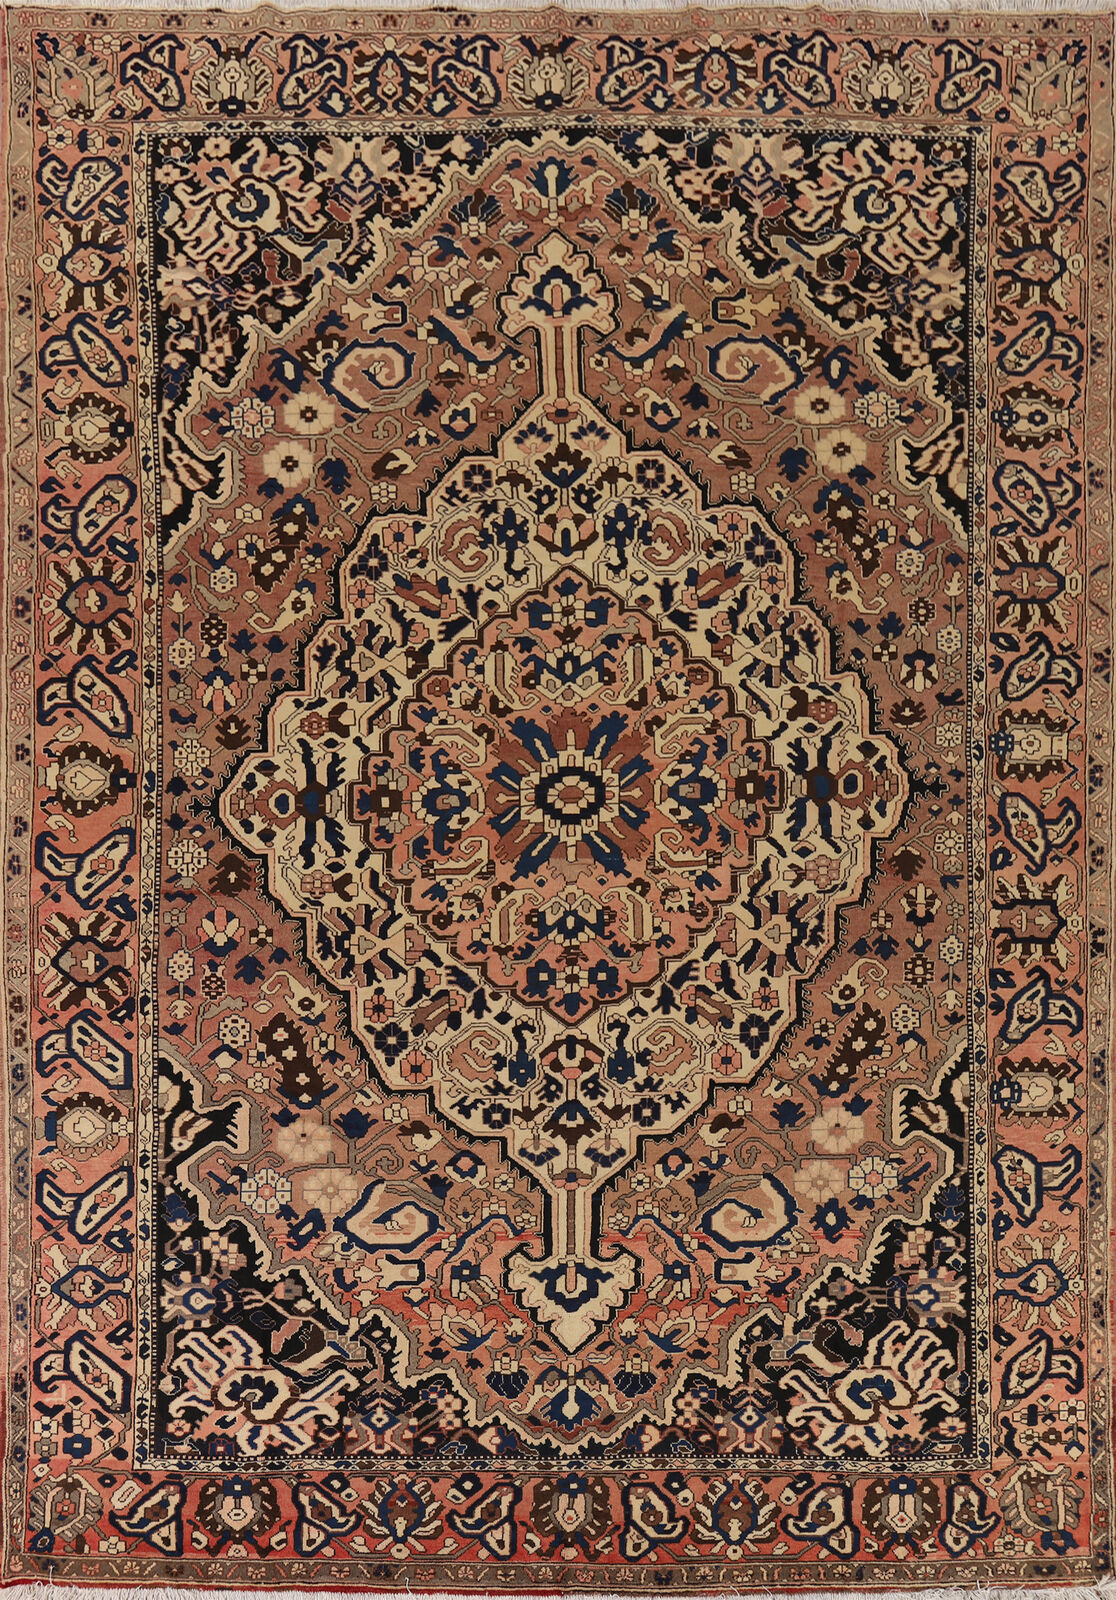 Vintage Handmade Wool Bakhtiari Area Rug 9x12 Traditional Living Room Carpet